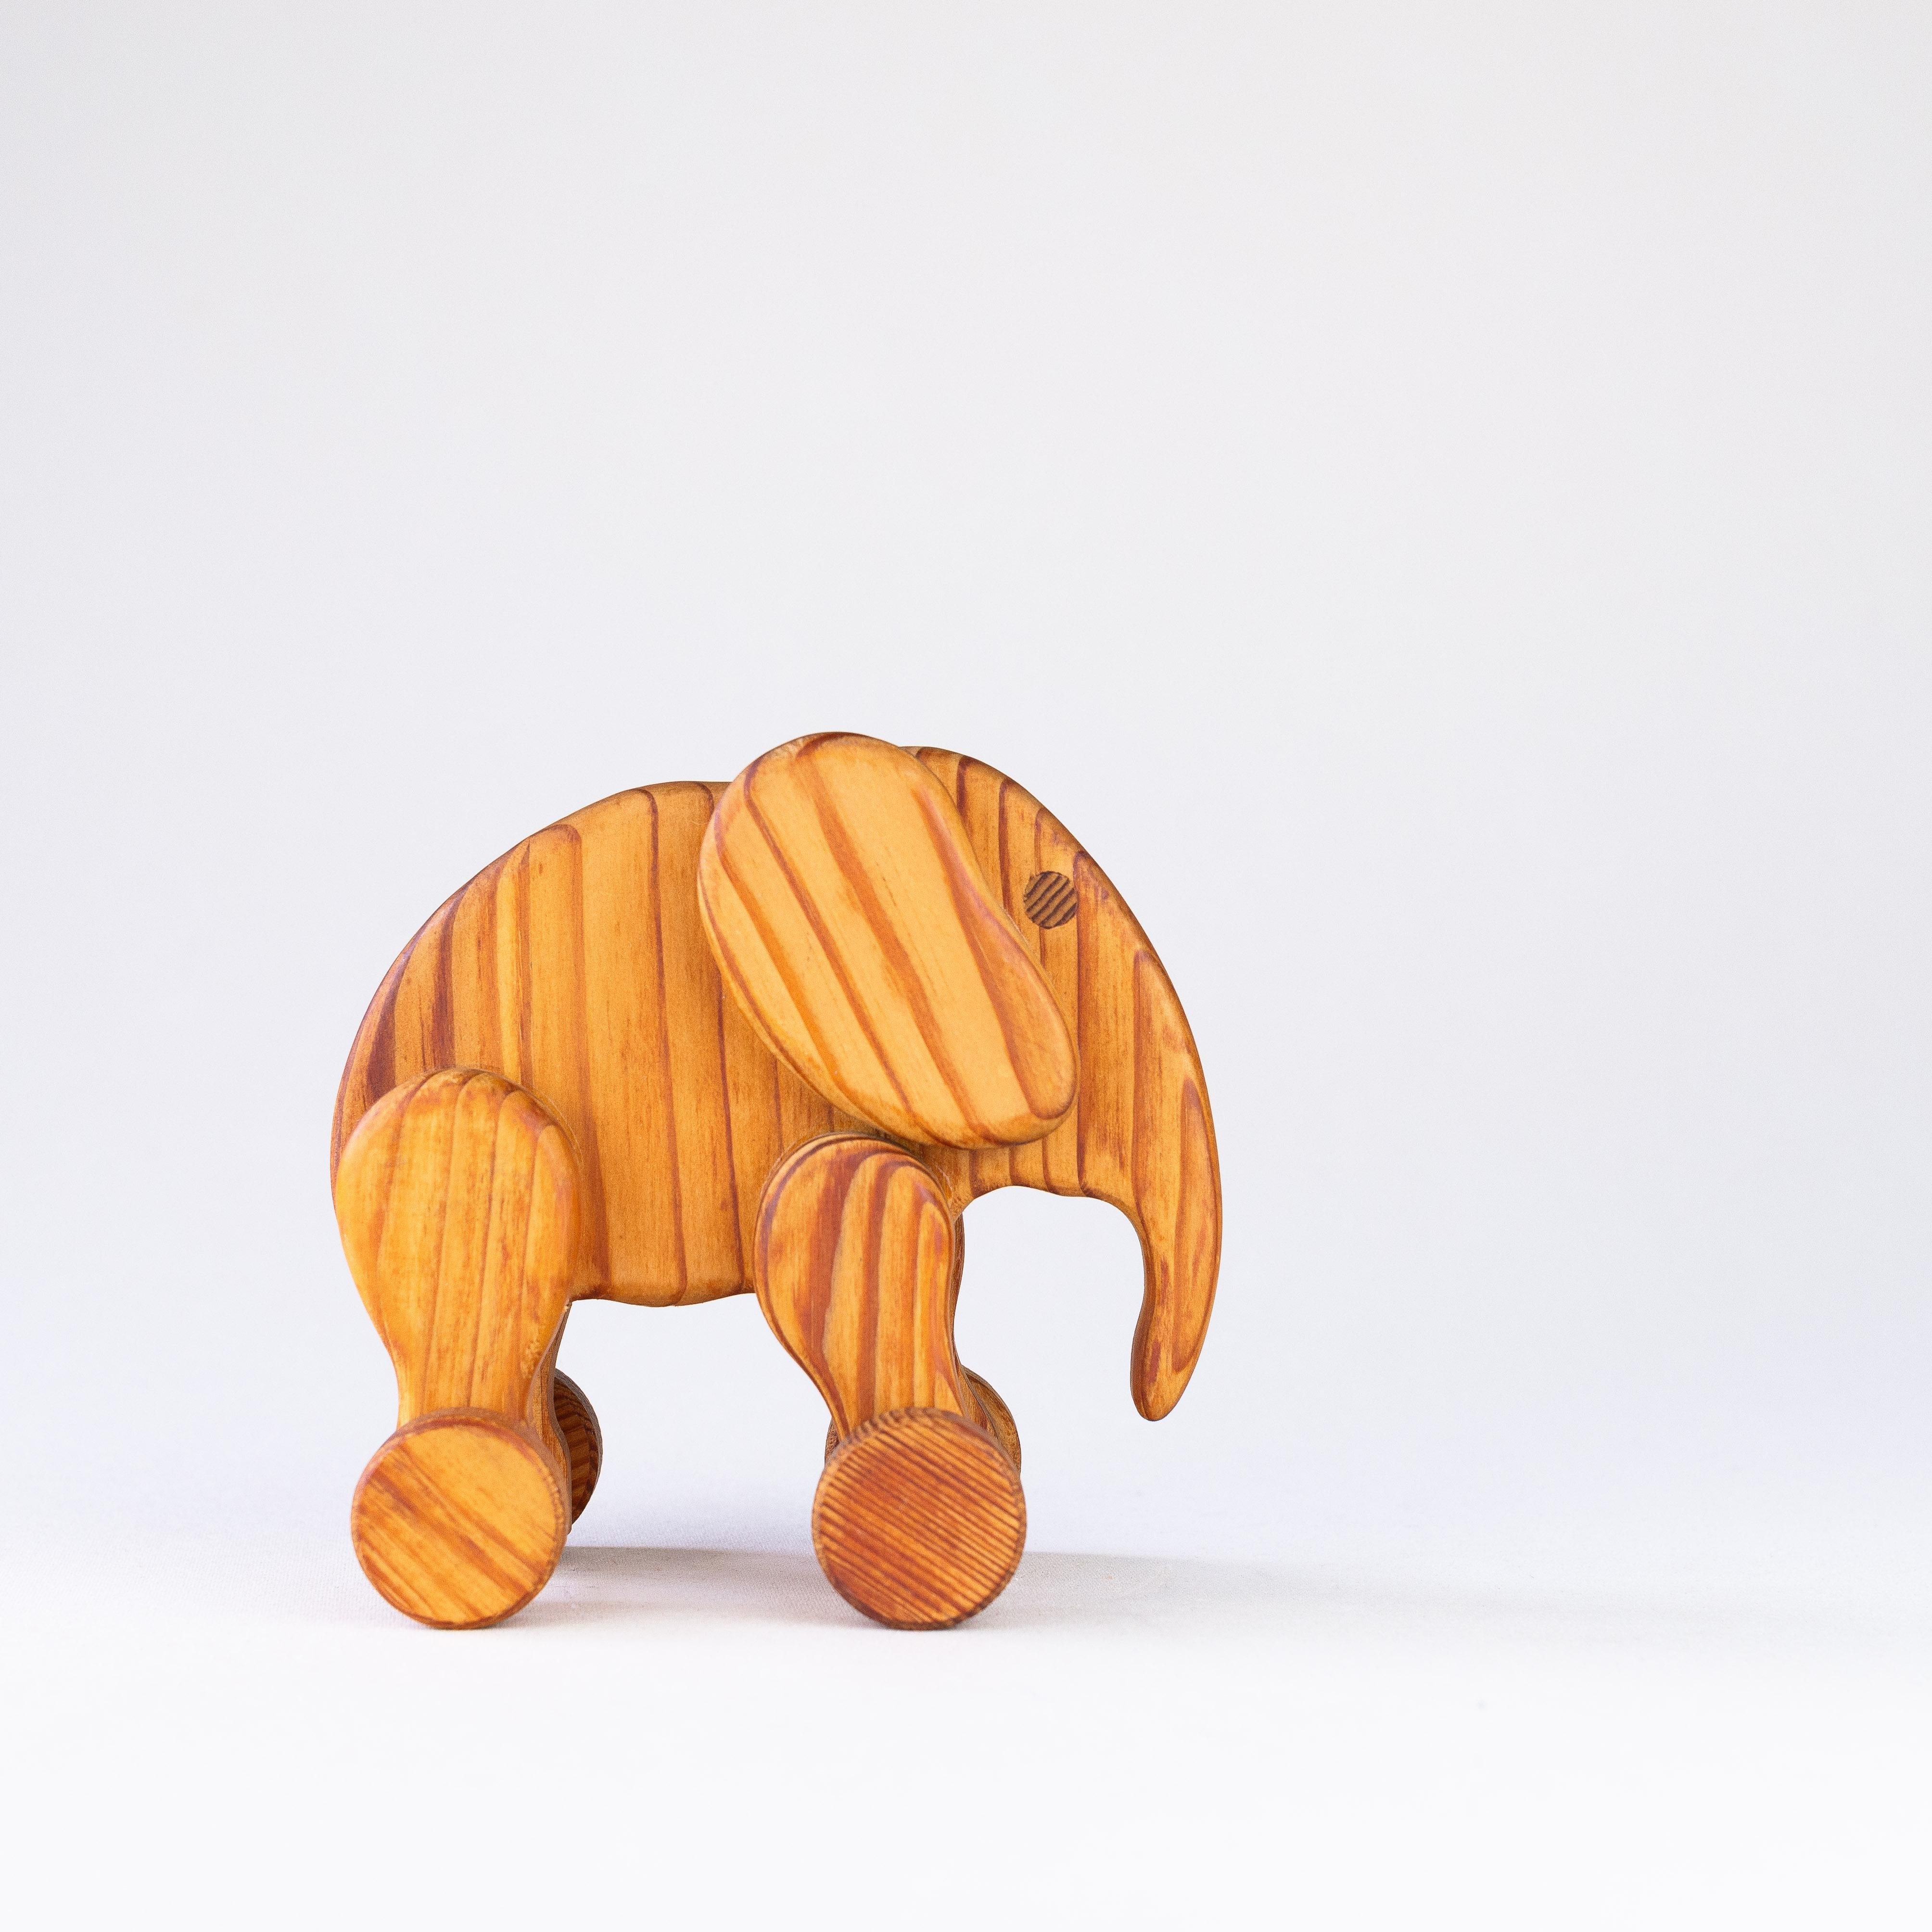 Holz-Elefant auf Rädern aus den 1960er Jahren.

Hervorragendes Sammlerstück mit einem sehr schlanken und minimalen Design.

Dieses Stück aus Kiefernholz zeigt eine schöne Holzarbeit, die die Maserung des Holzes in verschiedenen Richtungen ausnutzt: